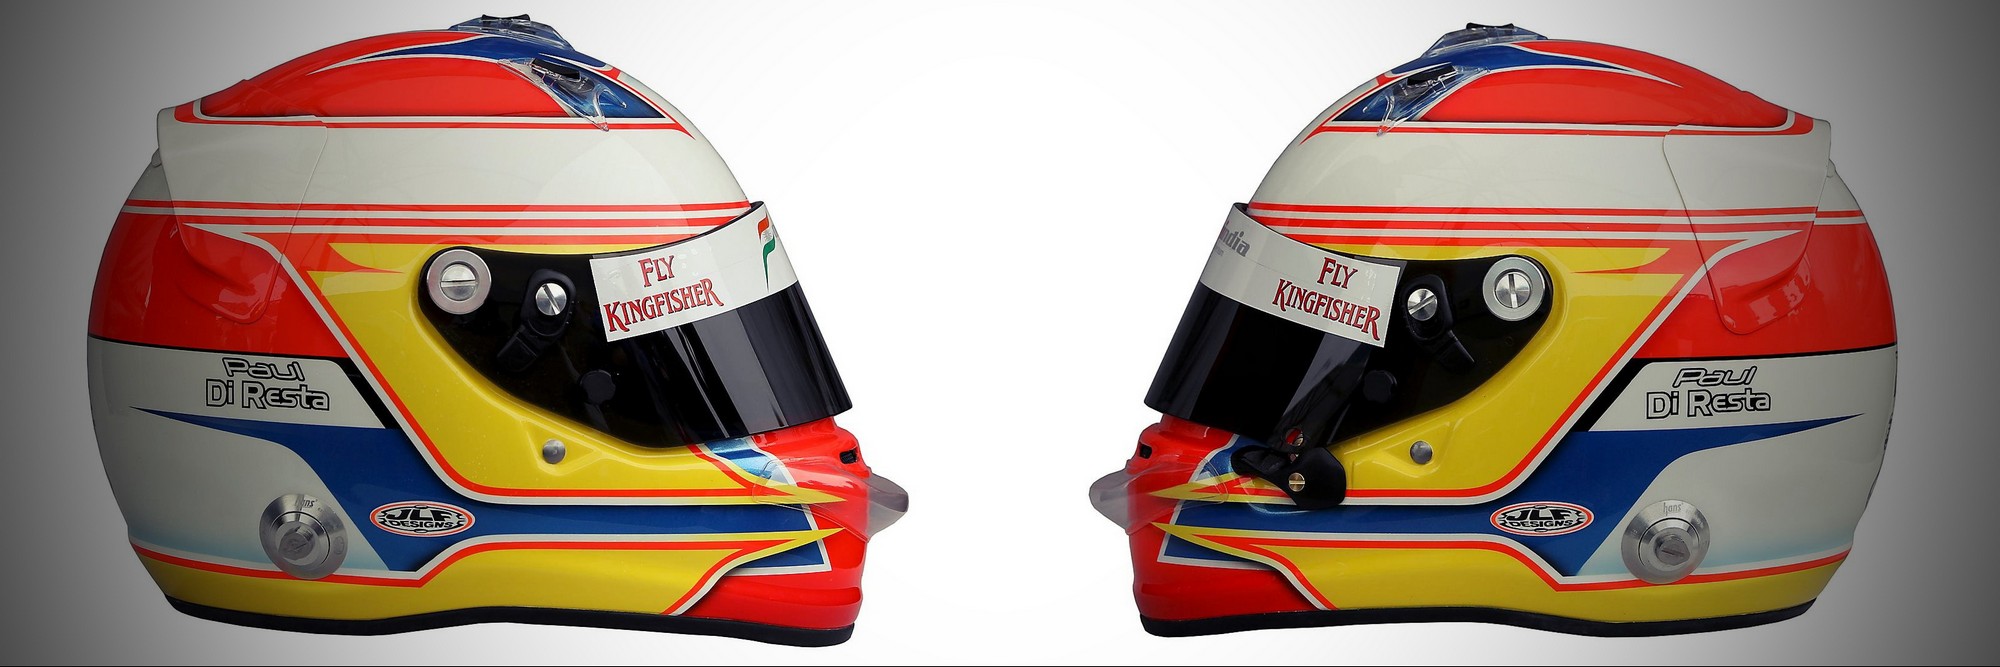 Шлем Пола ди Ресты на сезон 2011 года | 2011 helmet of Paul di Resta